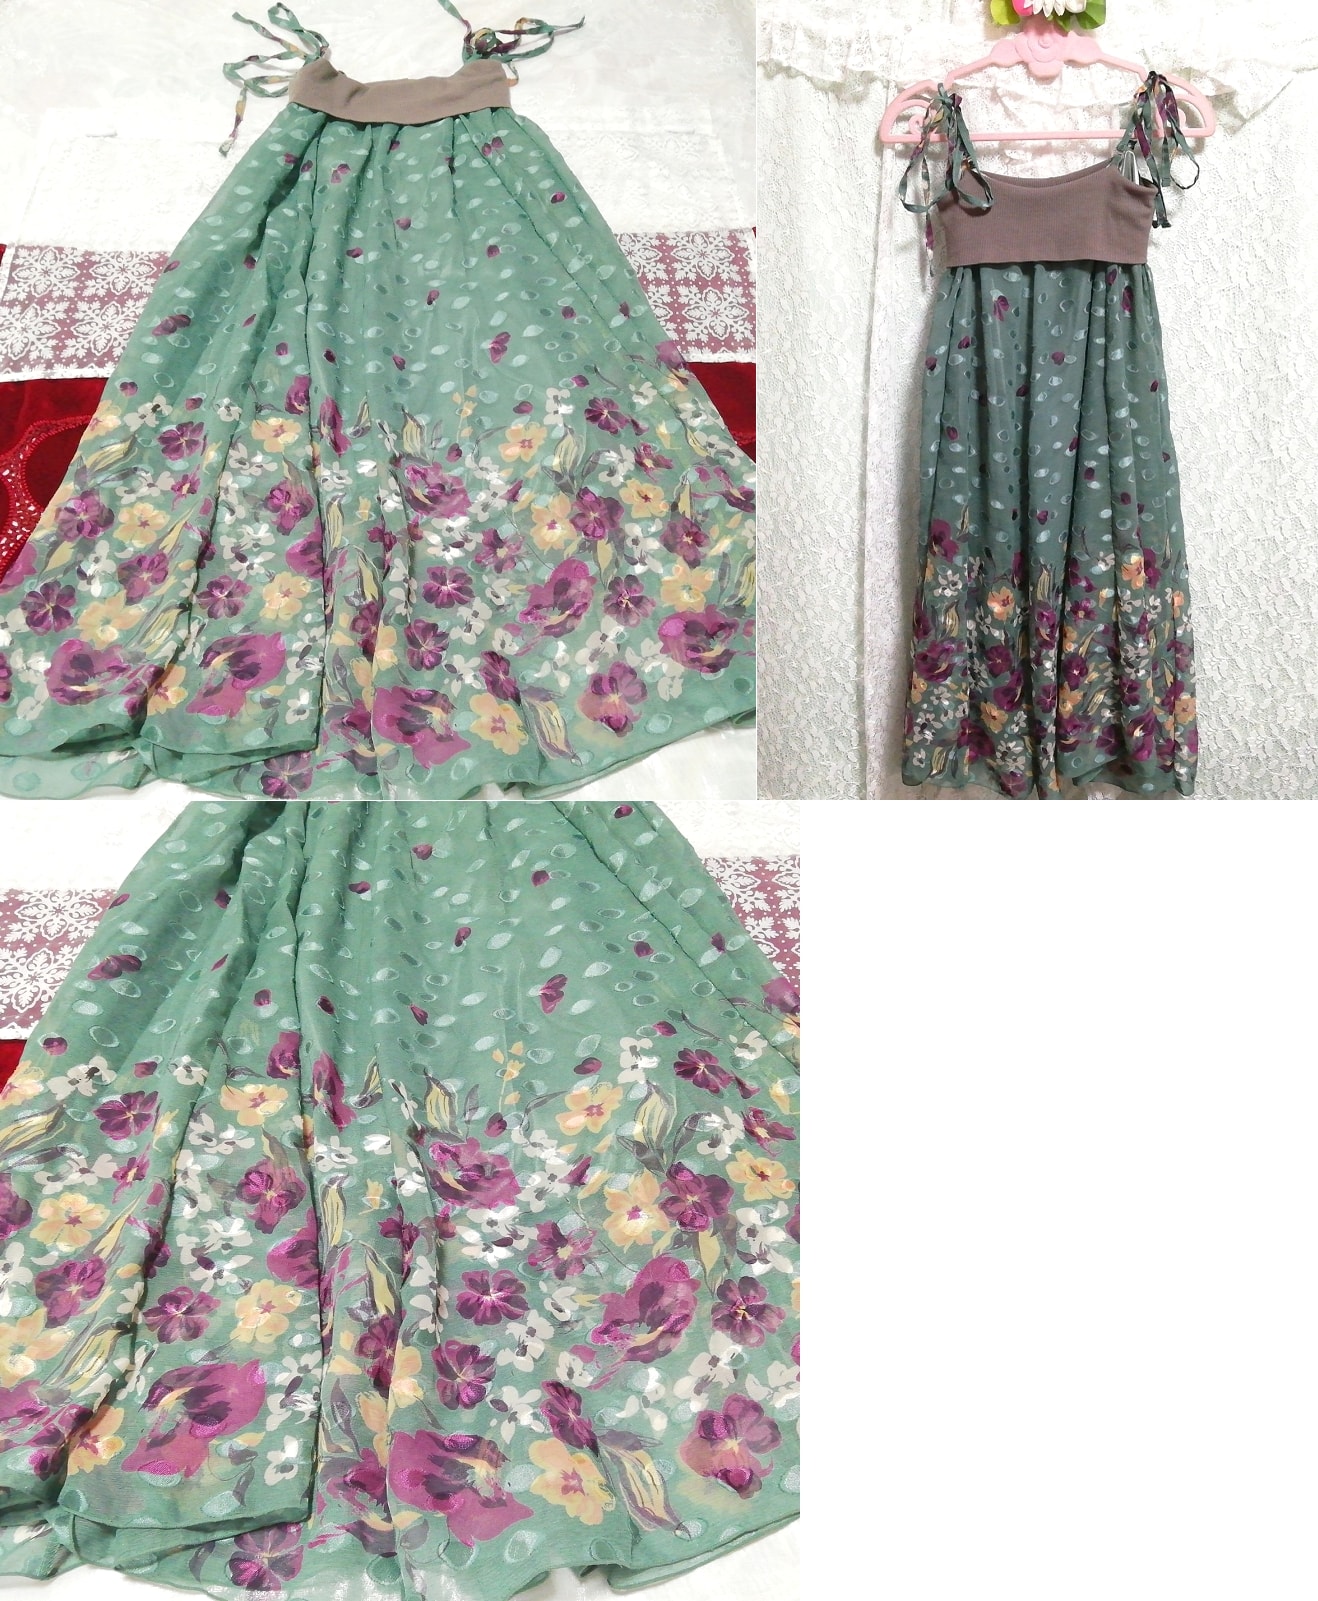 그린 퍼플 플로럴 패턴 니트 가슴 시폰 스커트 네글리제 나이트가운 캐미솔 드레스, 패션, 숙녀 패션, 캐미솔